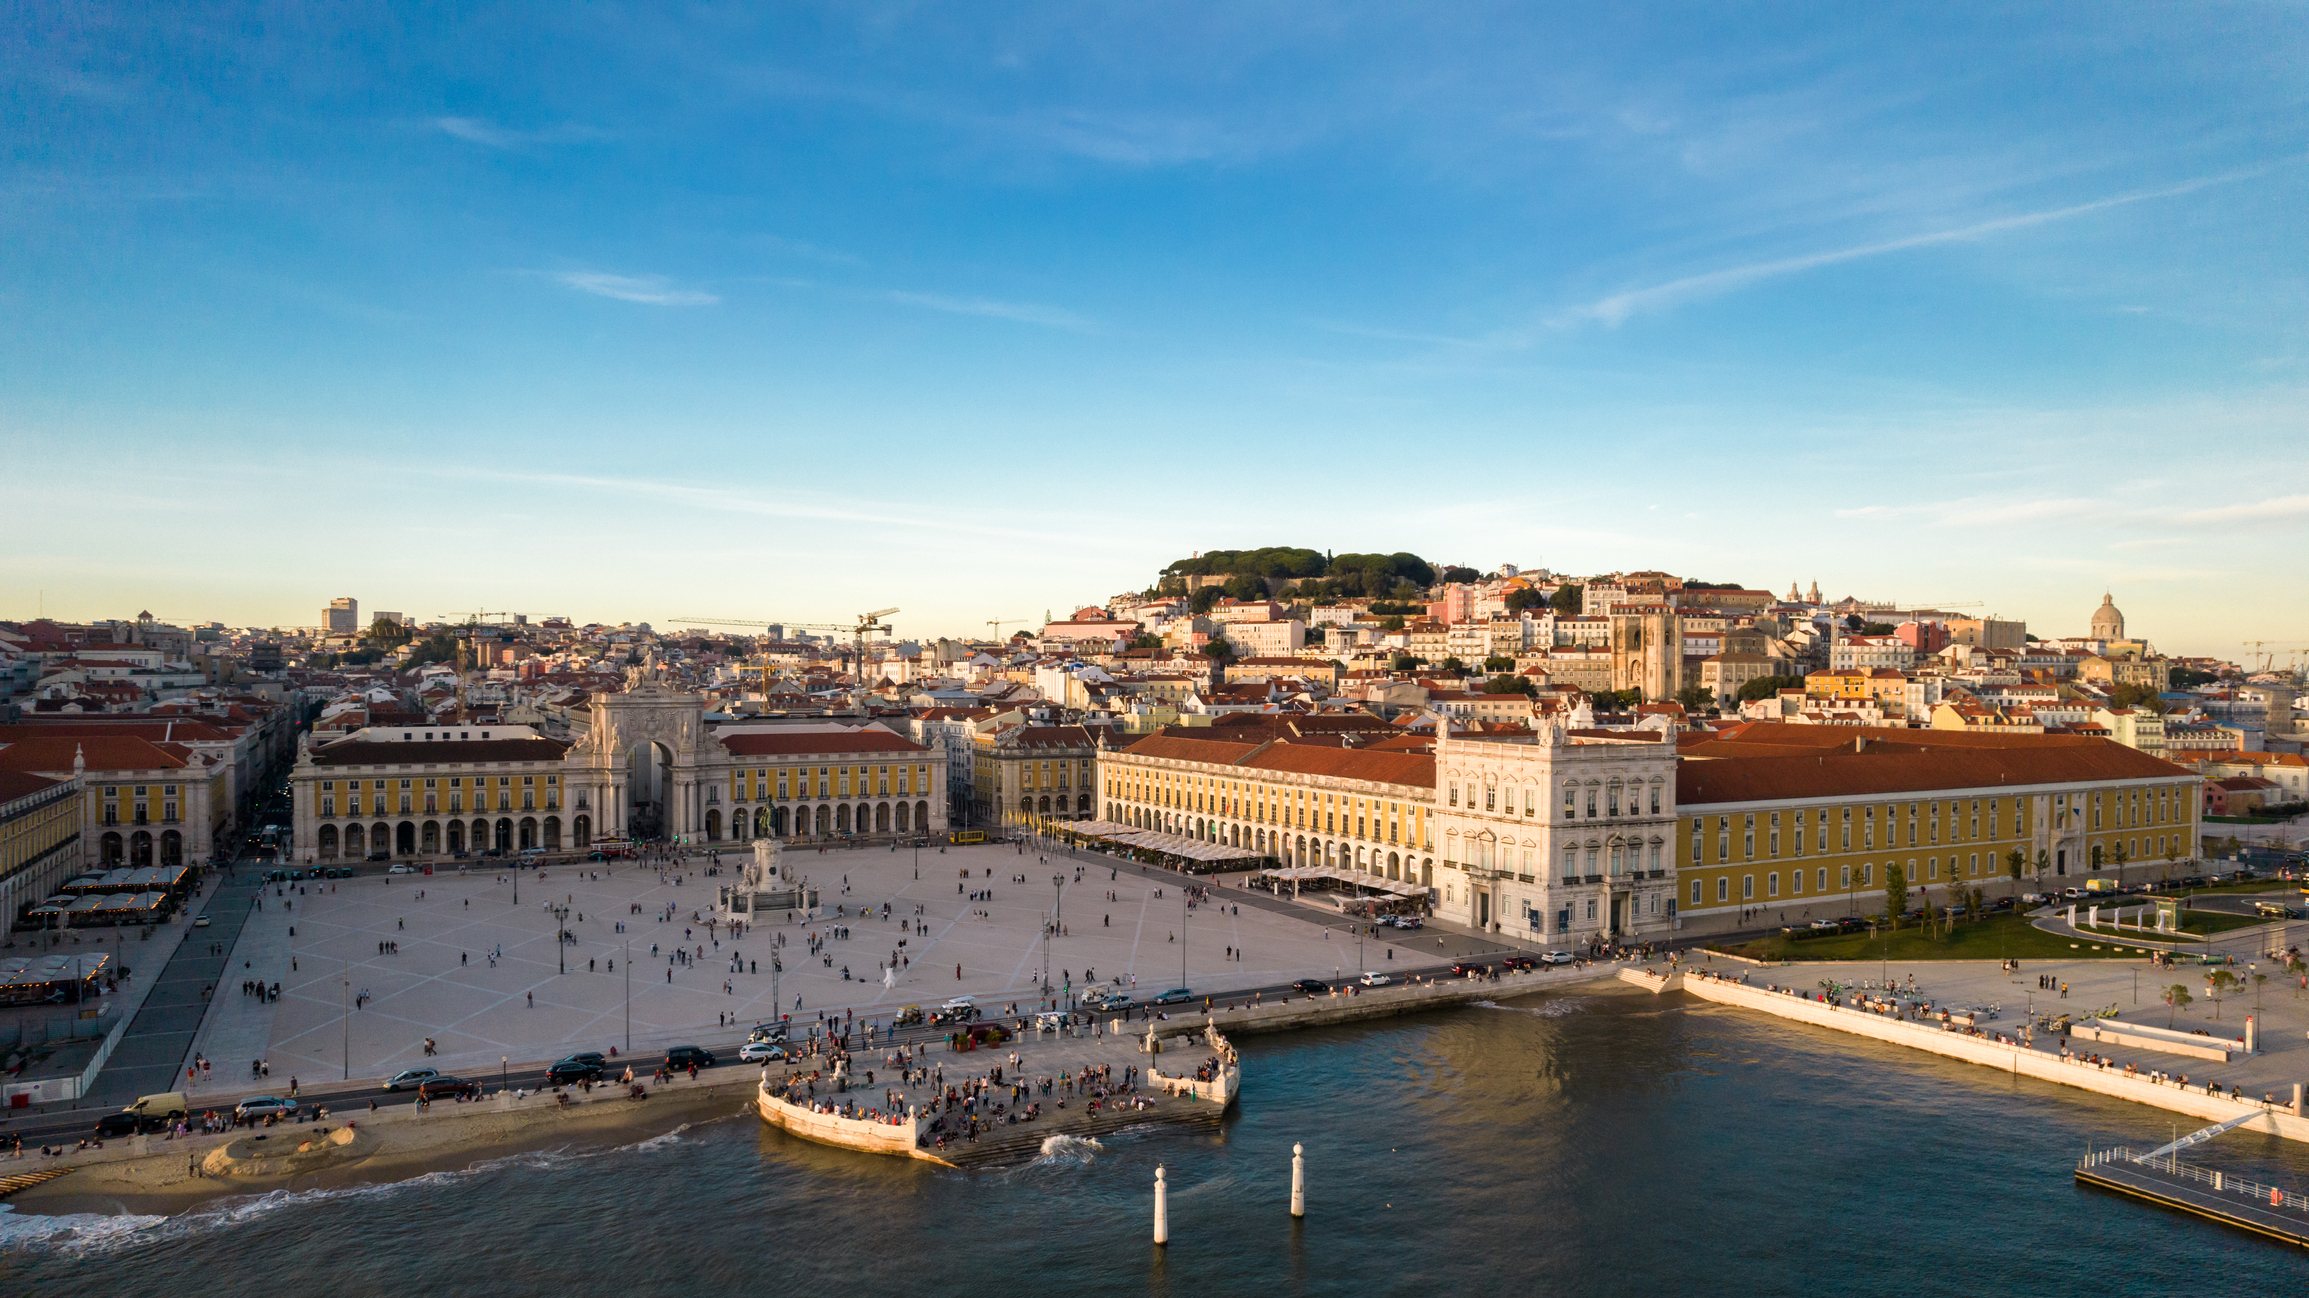 Lisboa foi considerada a melhor cidade para viajar. Também tem o melhor porto de cruzeiros da Europa, de acordo com a organização